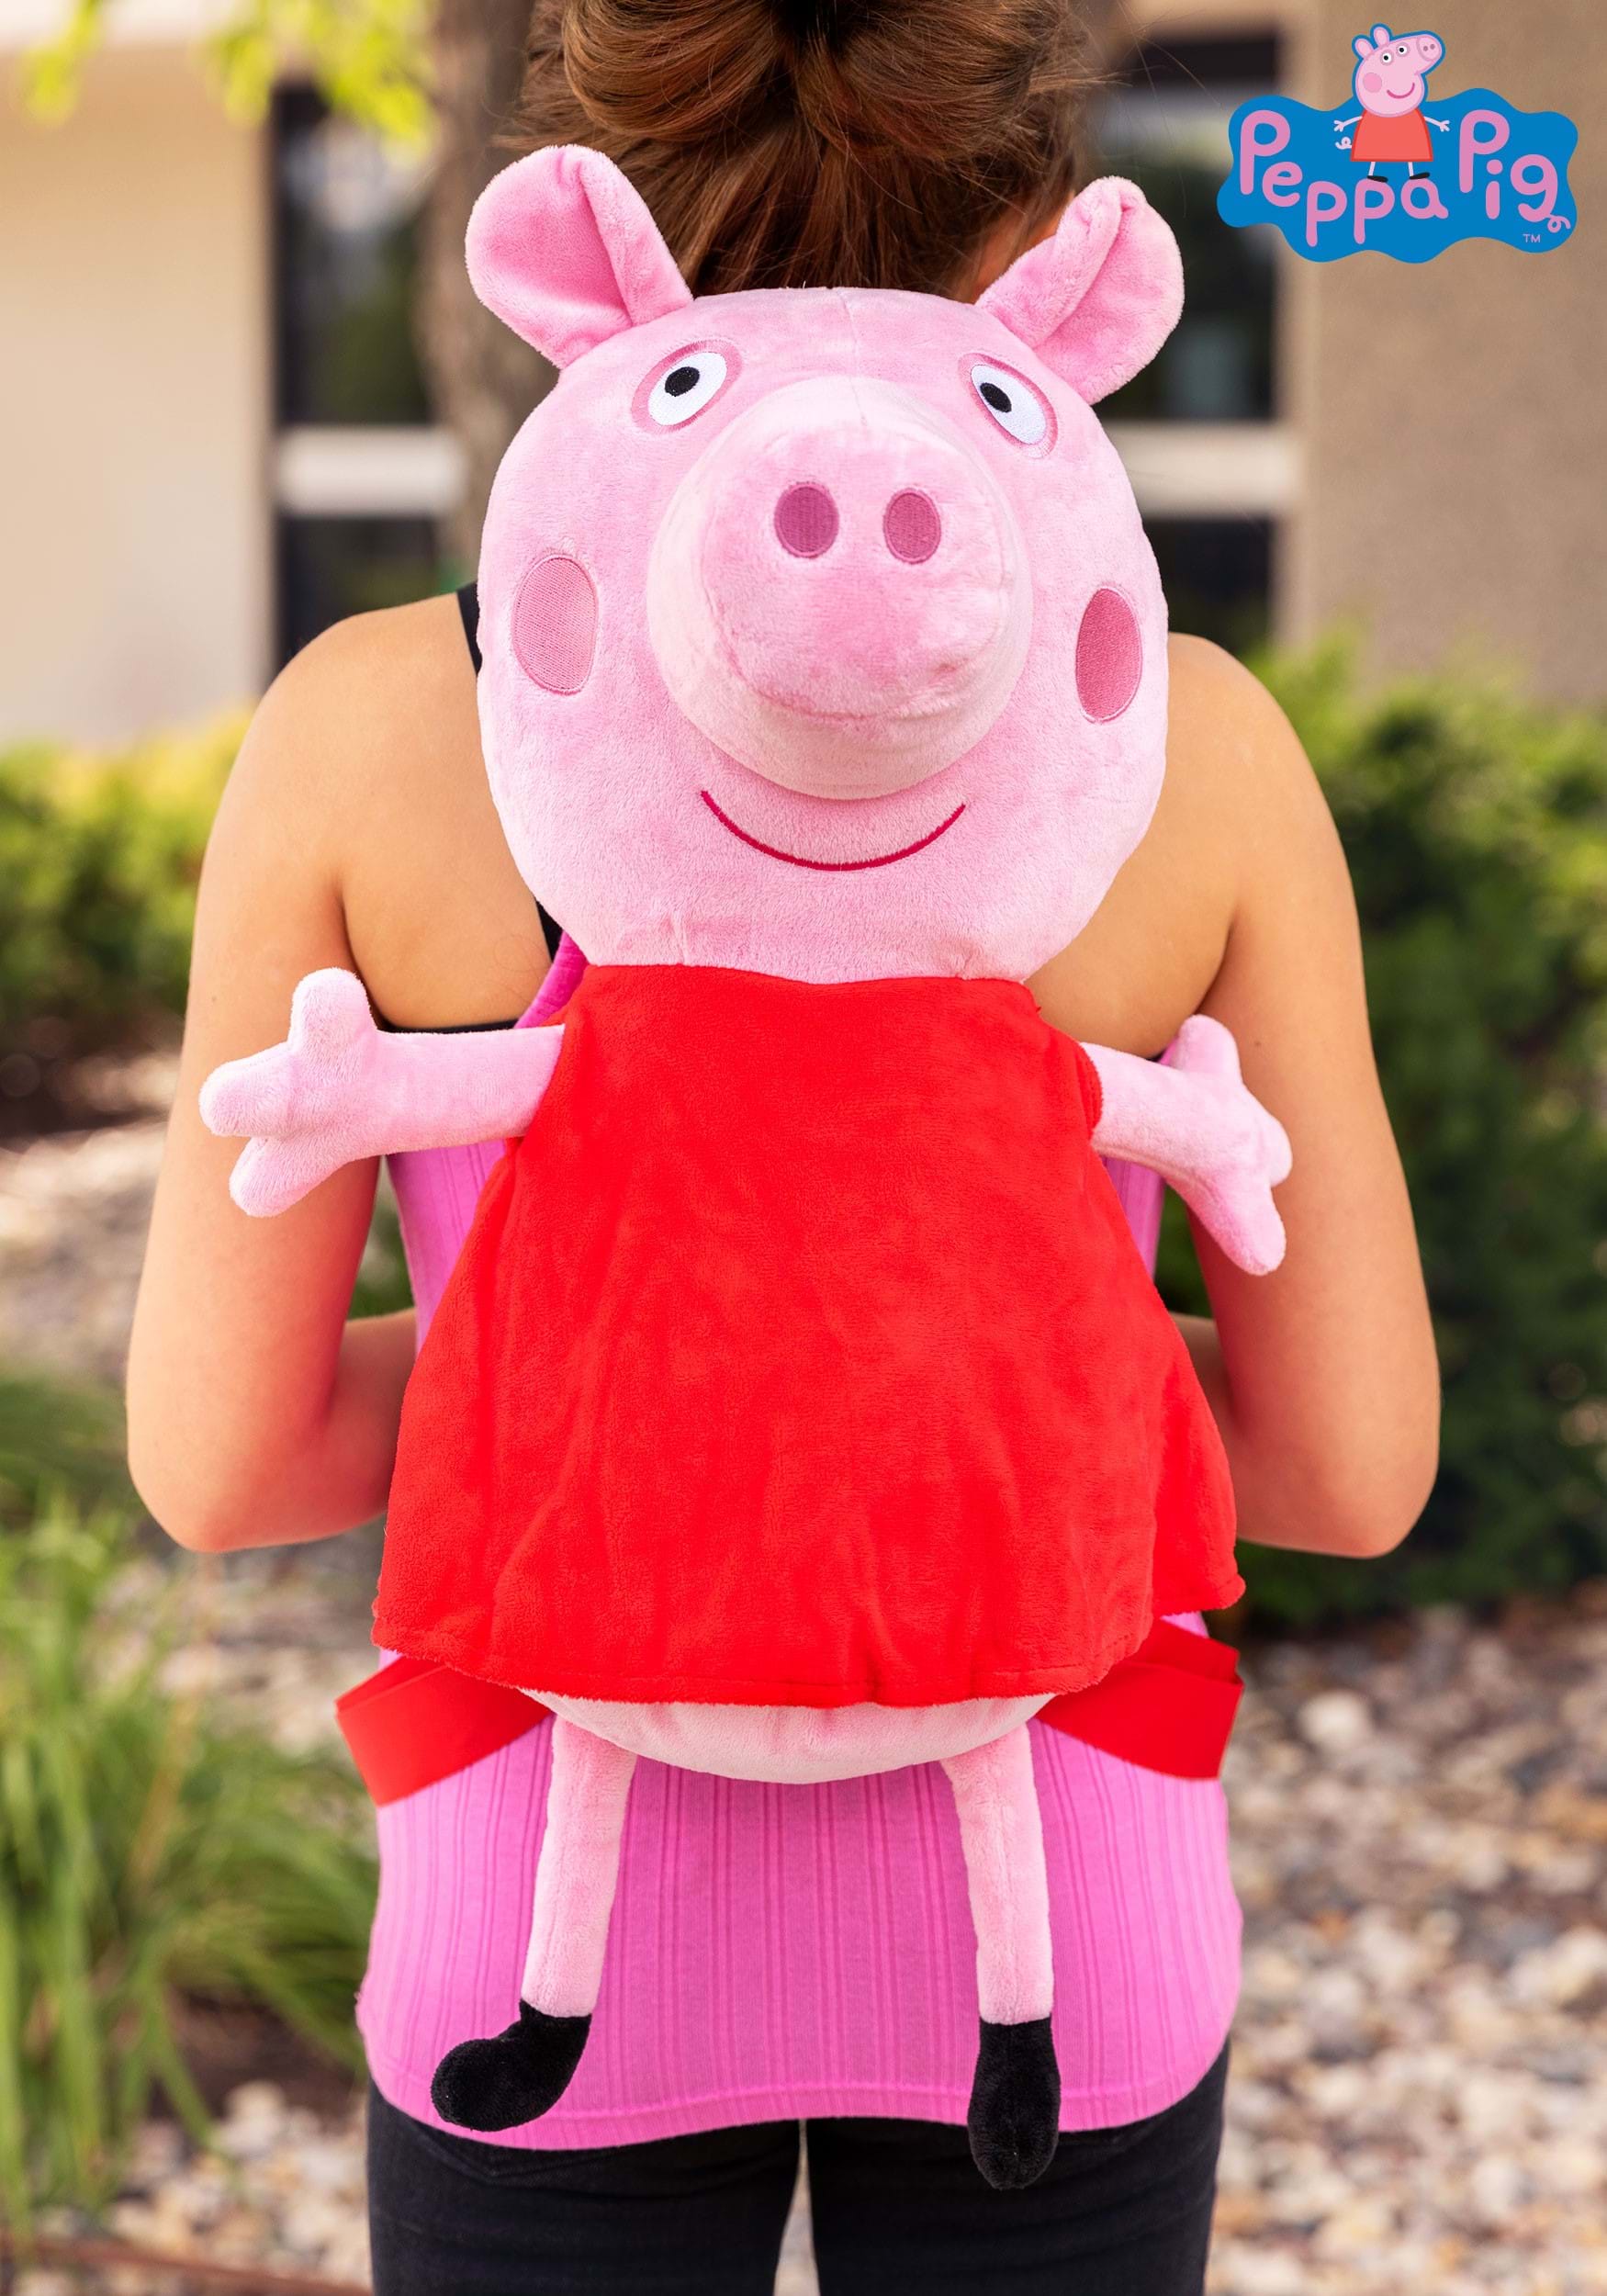 Peppa Pig & George Pig Backpack for Toddler Peppa Pig School Bag